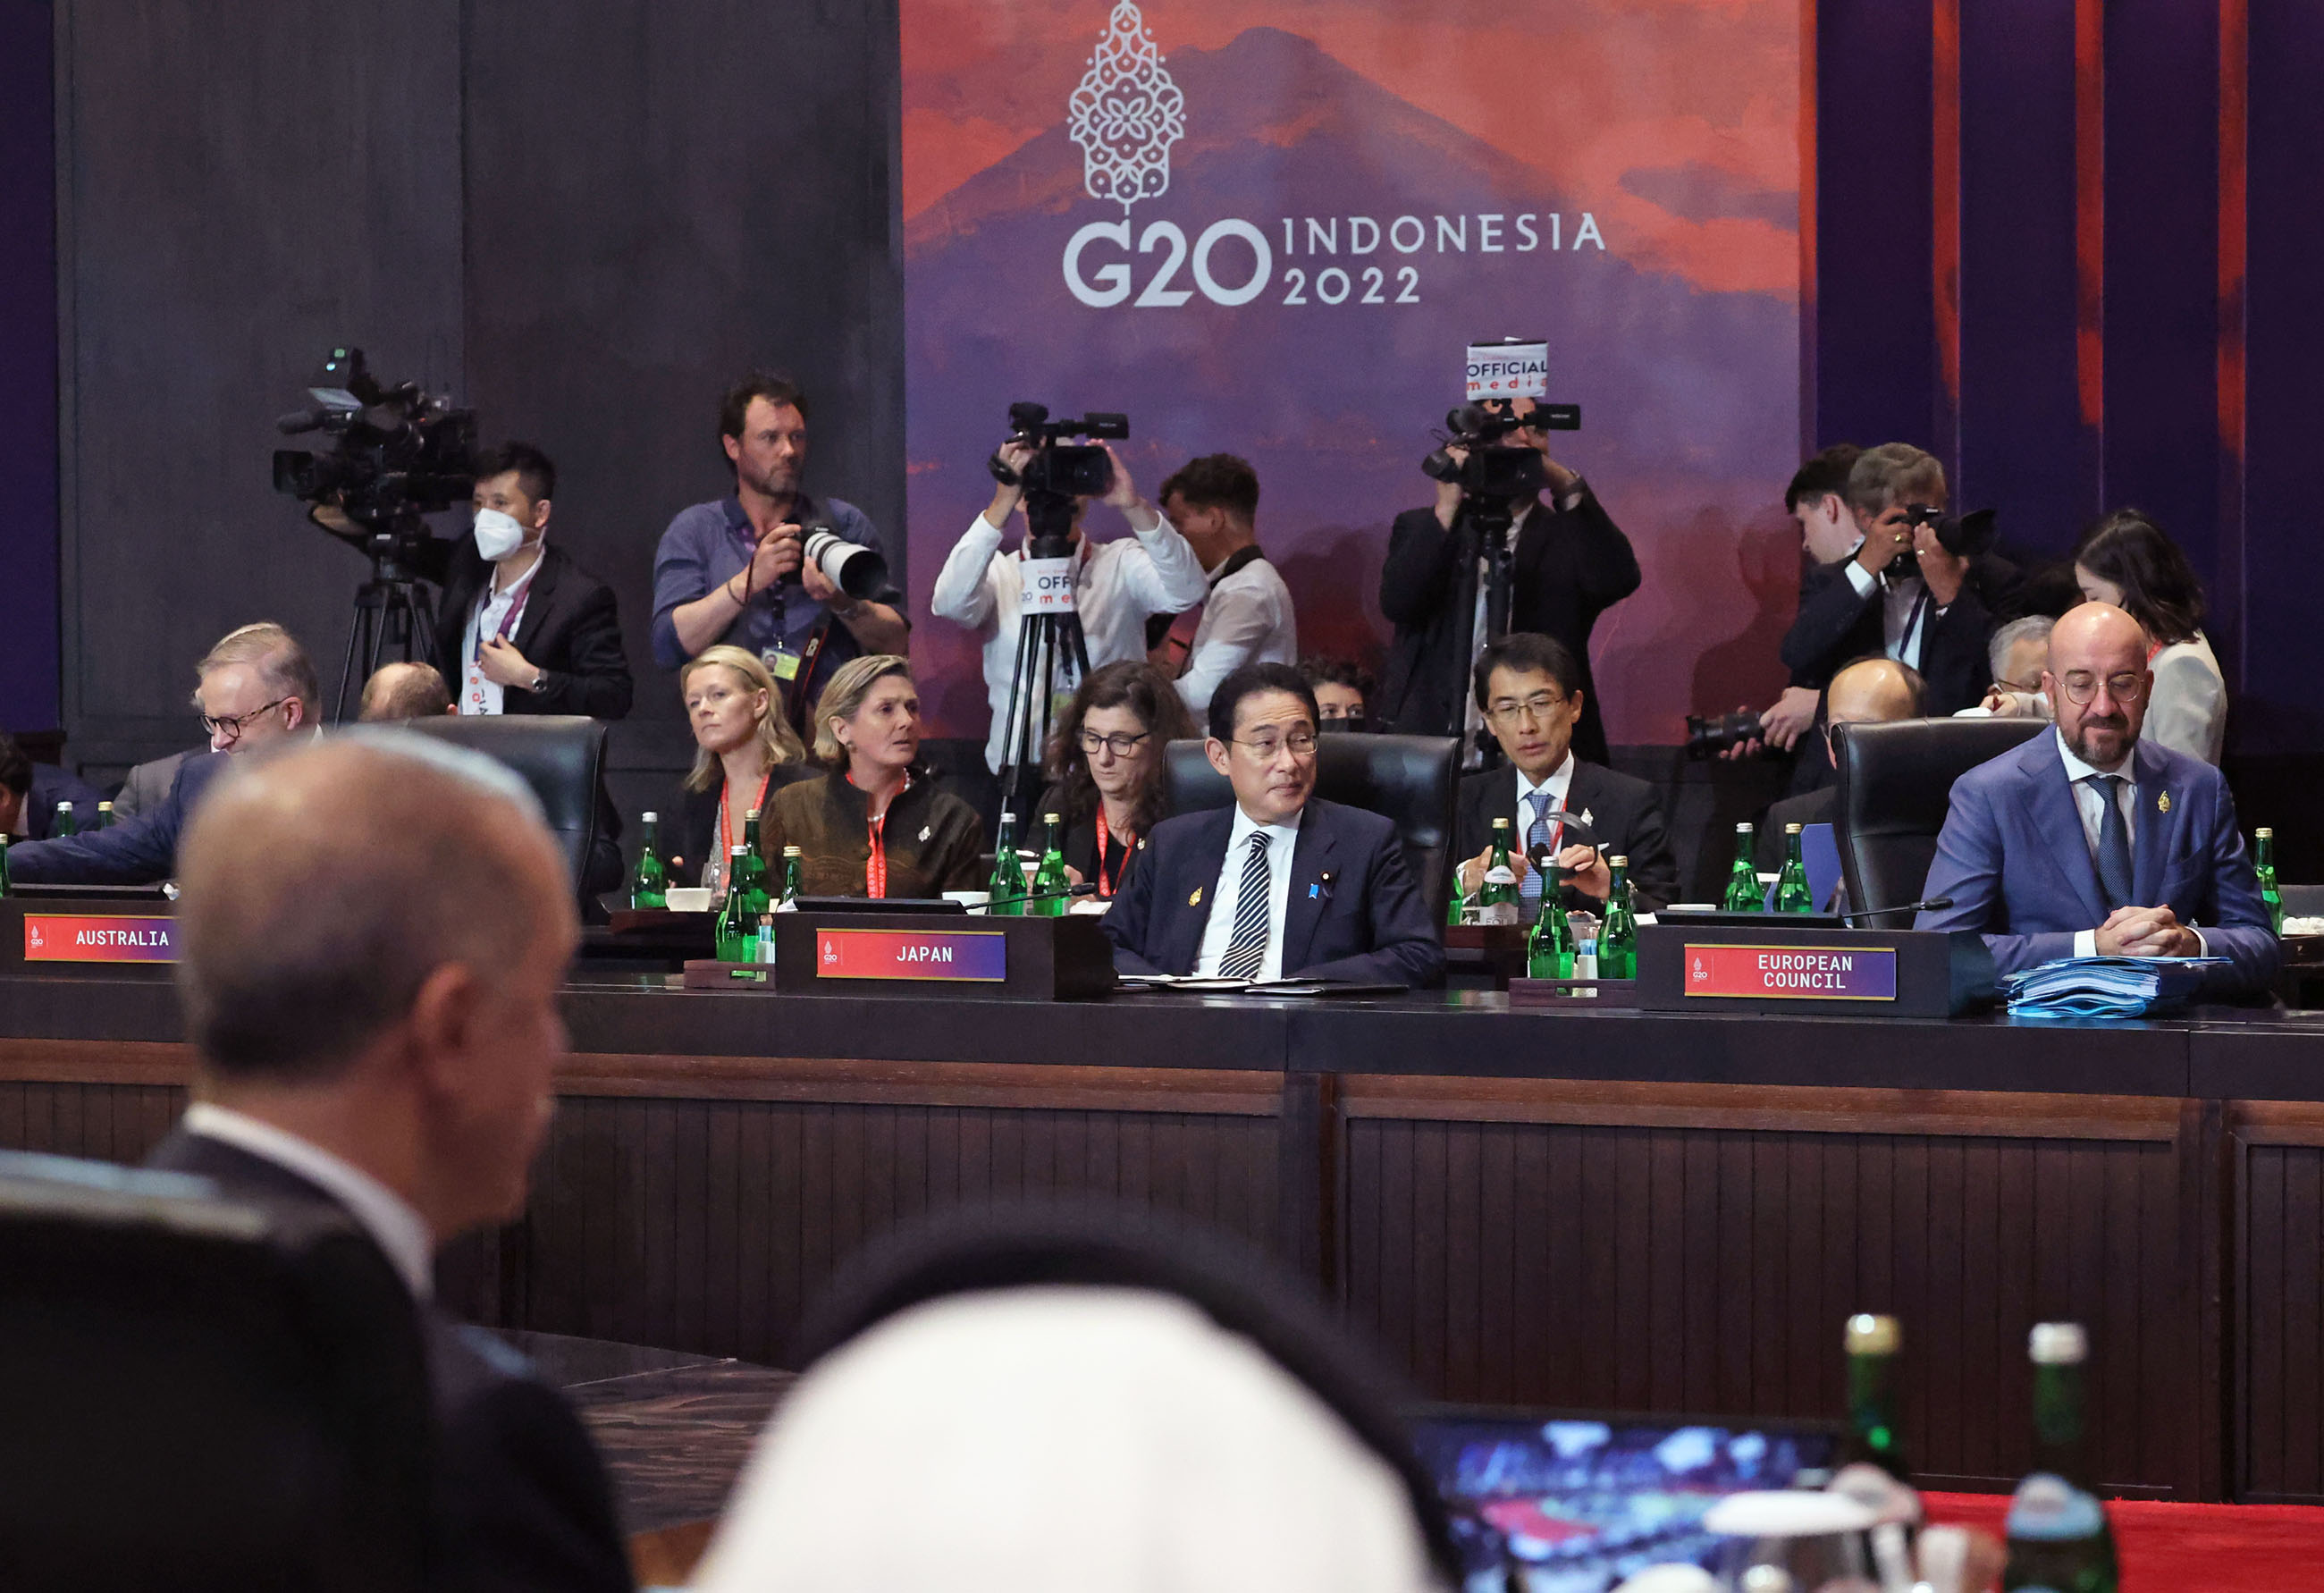 G20 Bali Summit: First Day